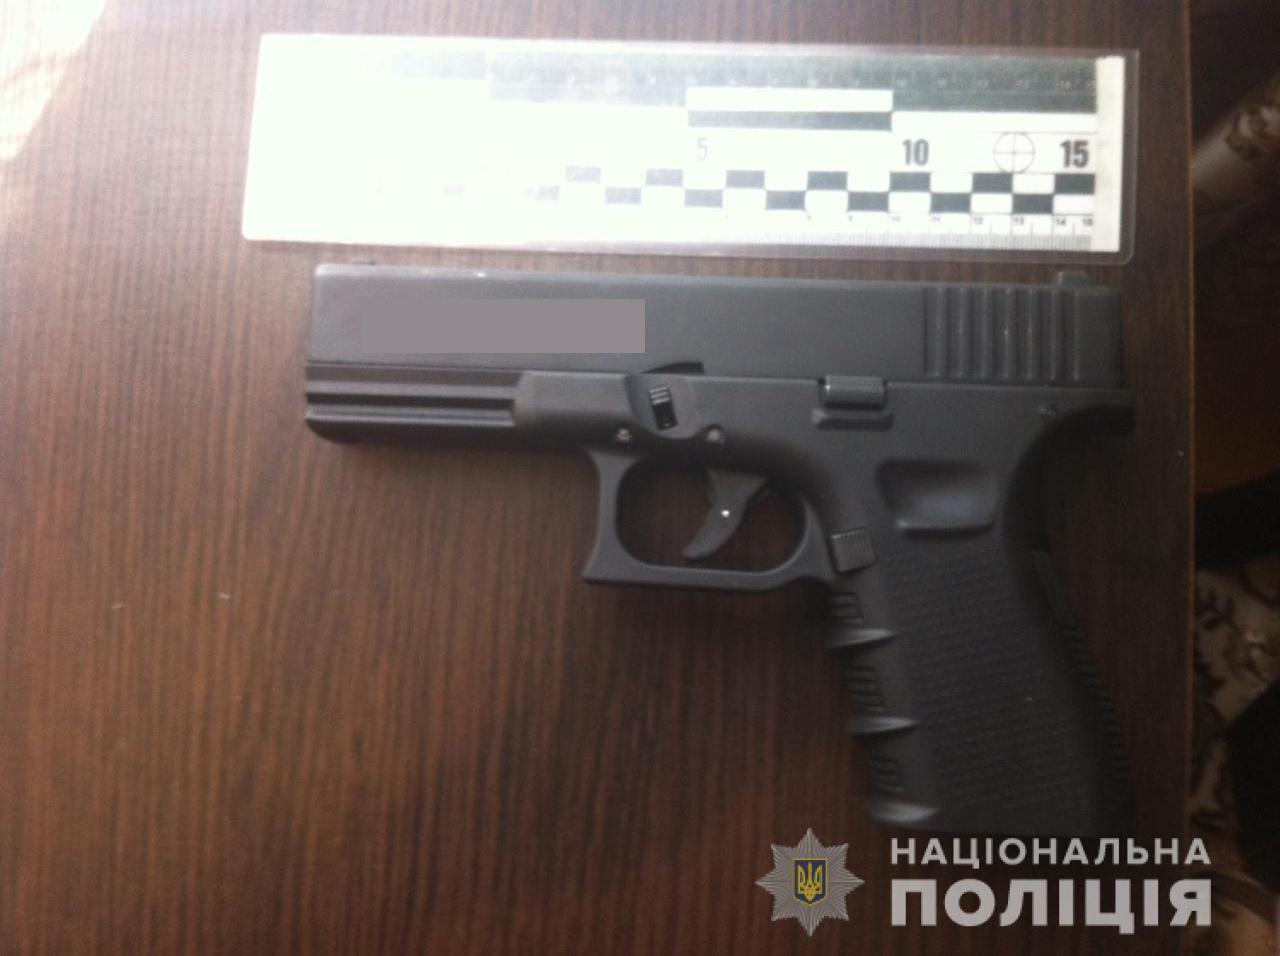 Поліція Закарпаття виявила на Житомирщині у місцевого велику суму грошей та зброю (ФОТО)